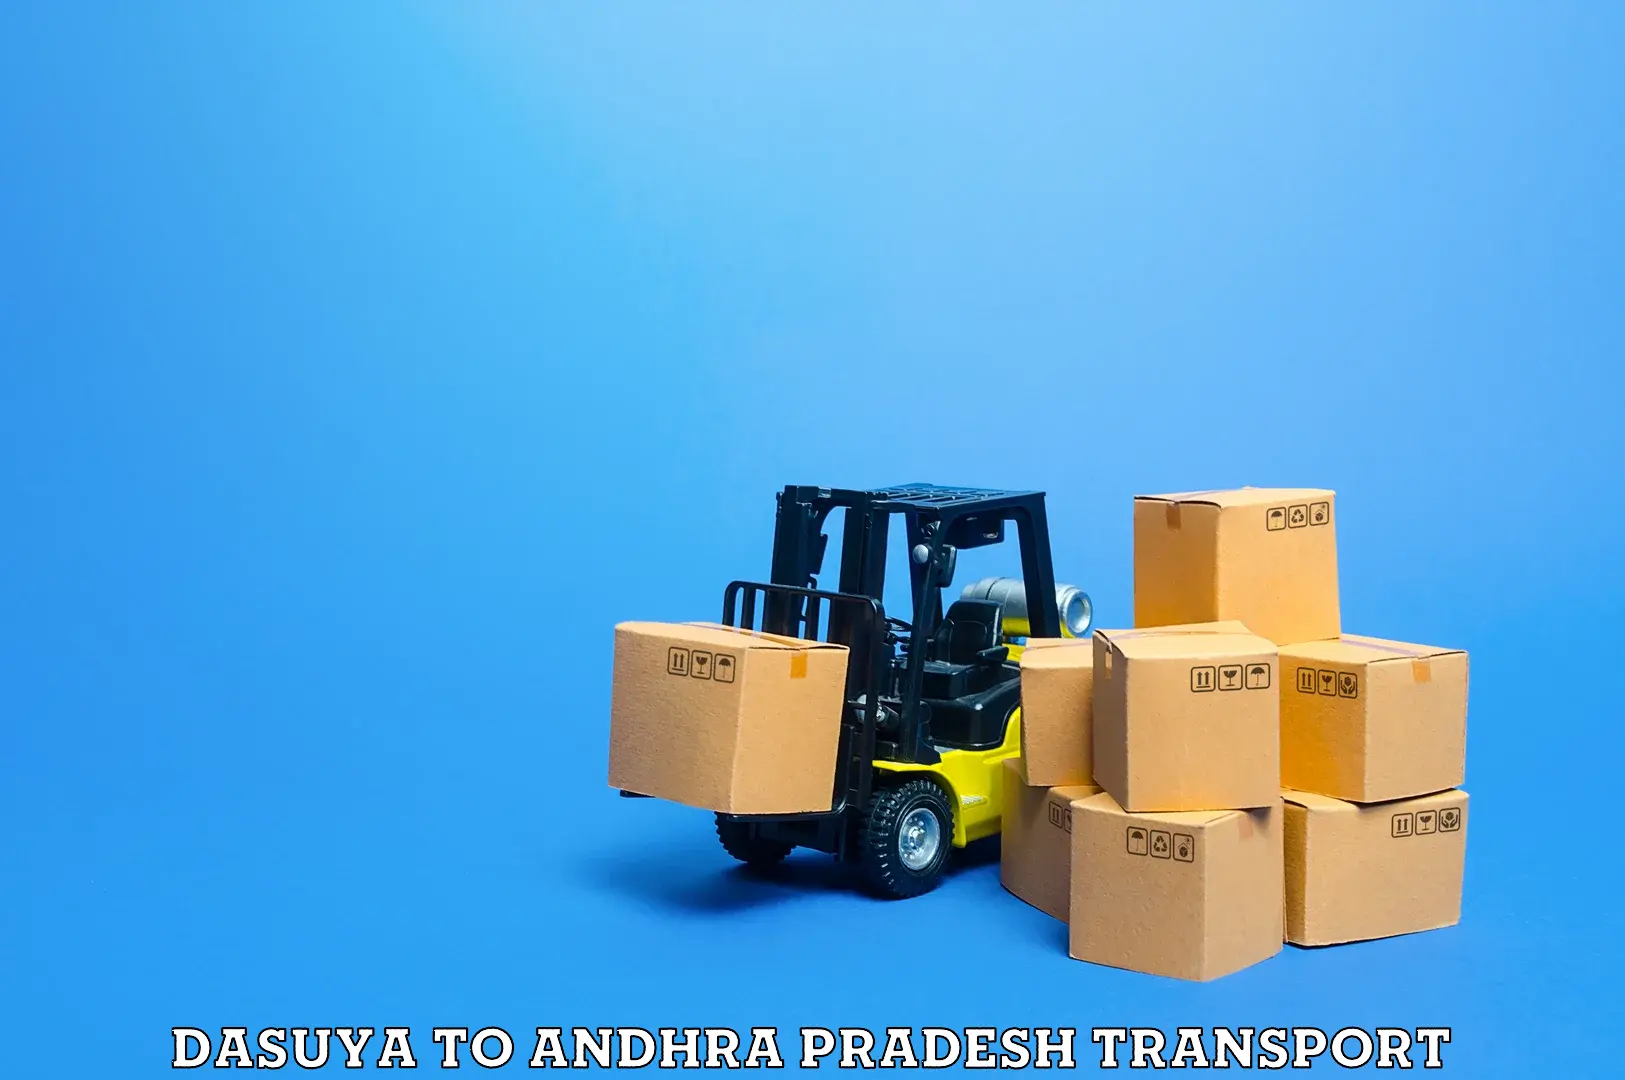 Delivery service Dasuya to Andhra Pradesh